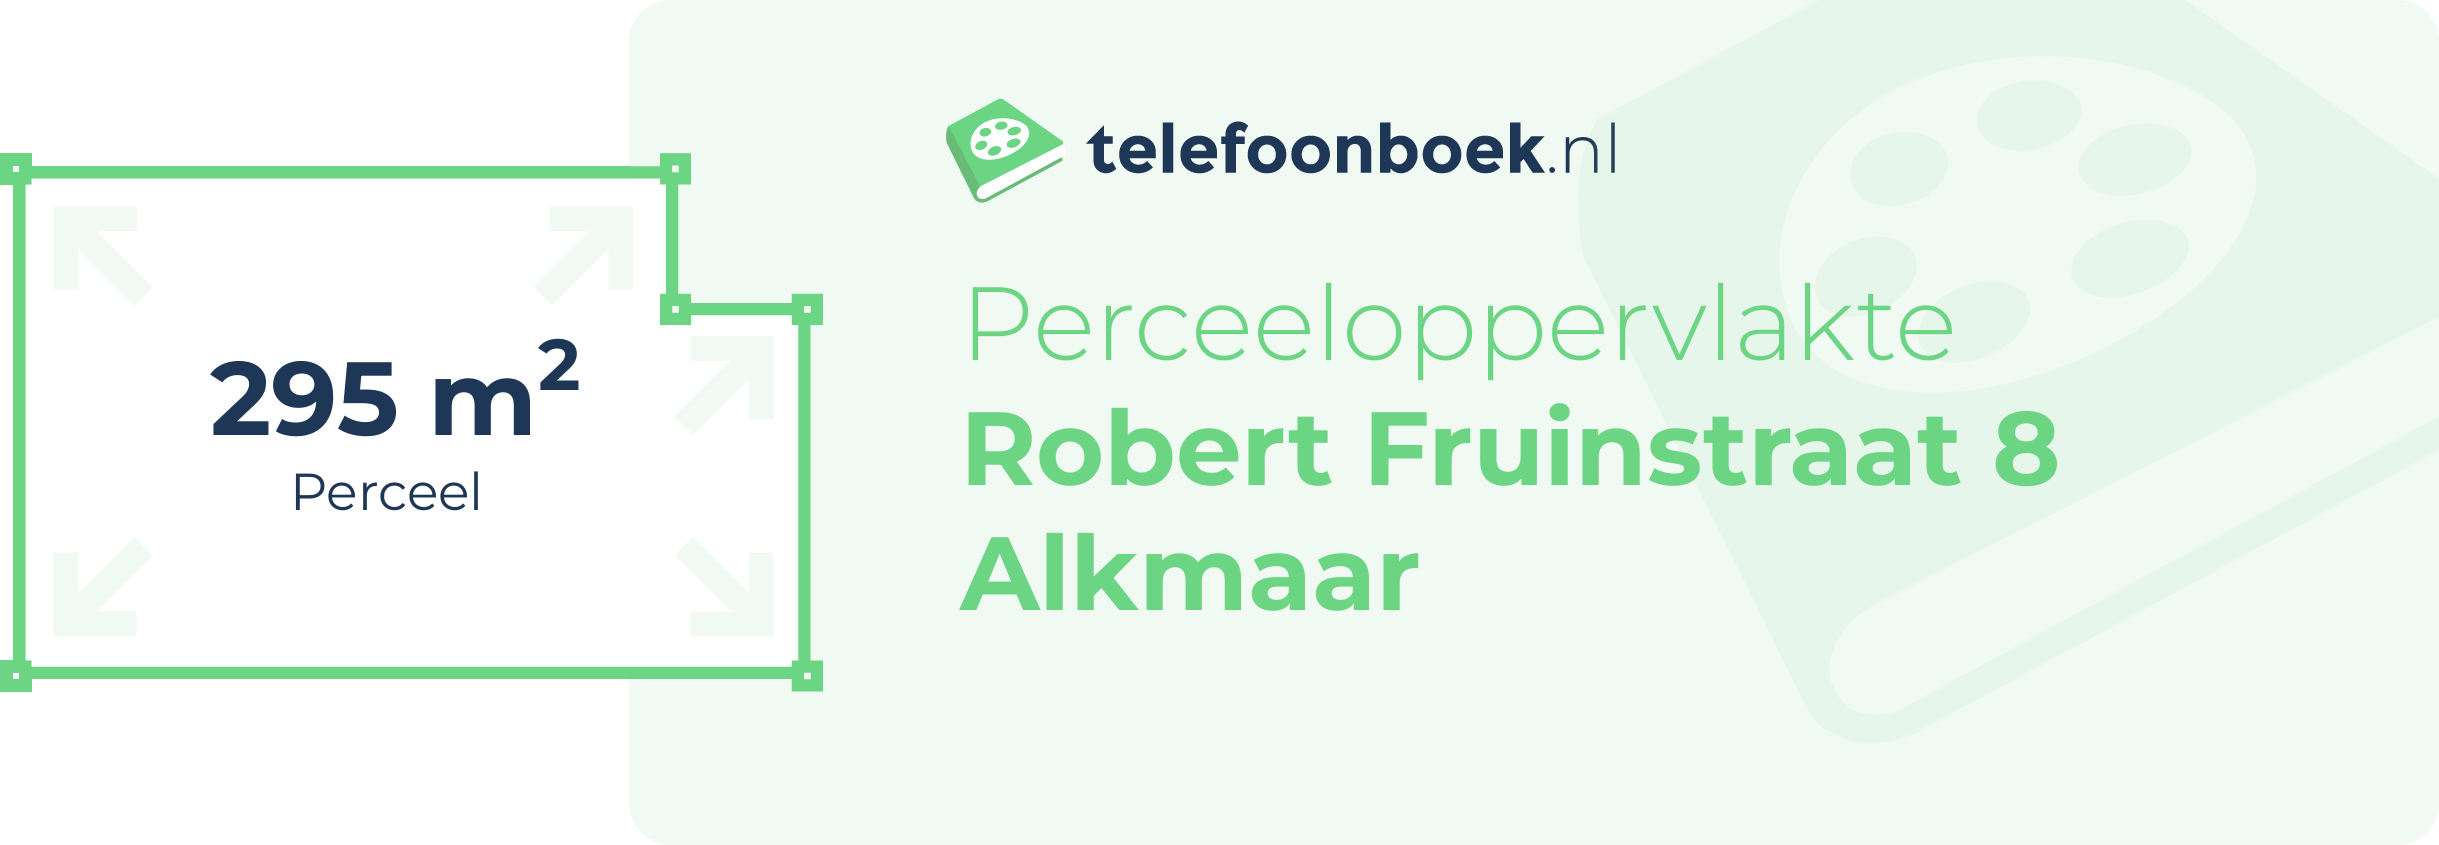 Perceeloppervlakte Robert Fruinstraat 8 Alkmaar